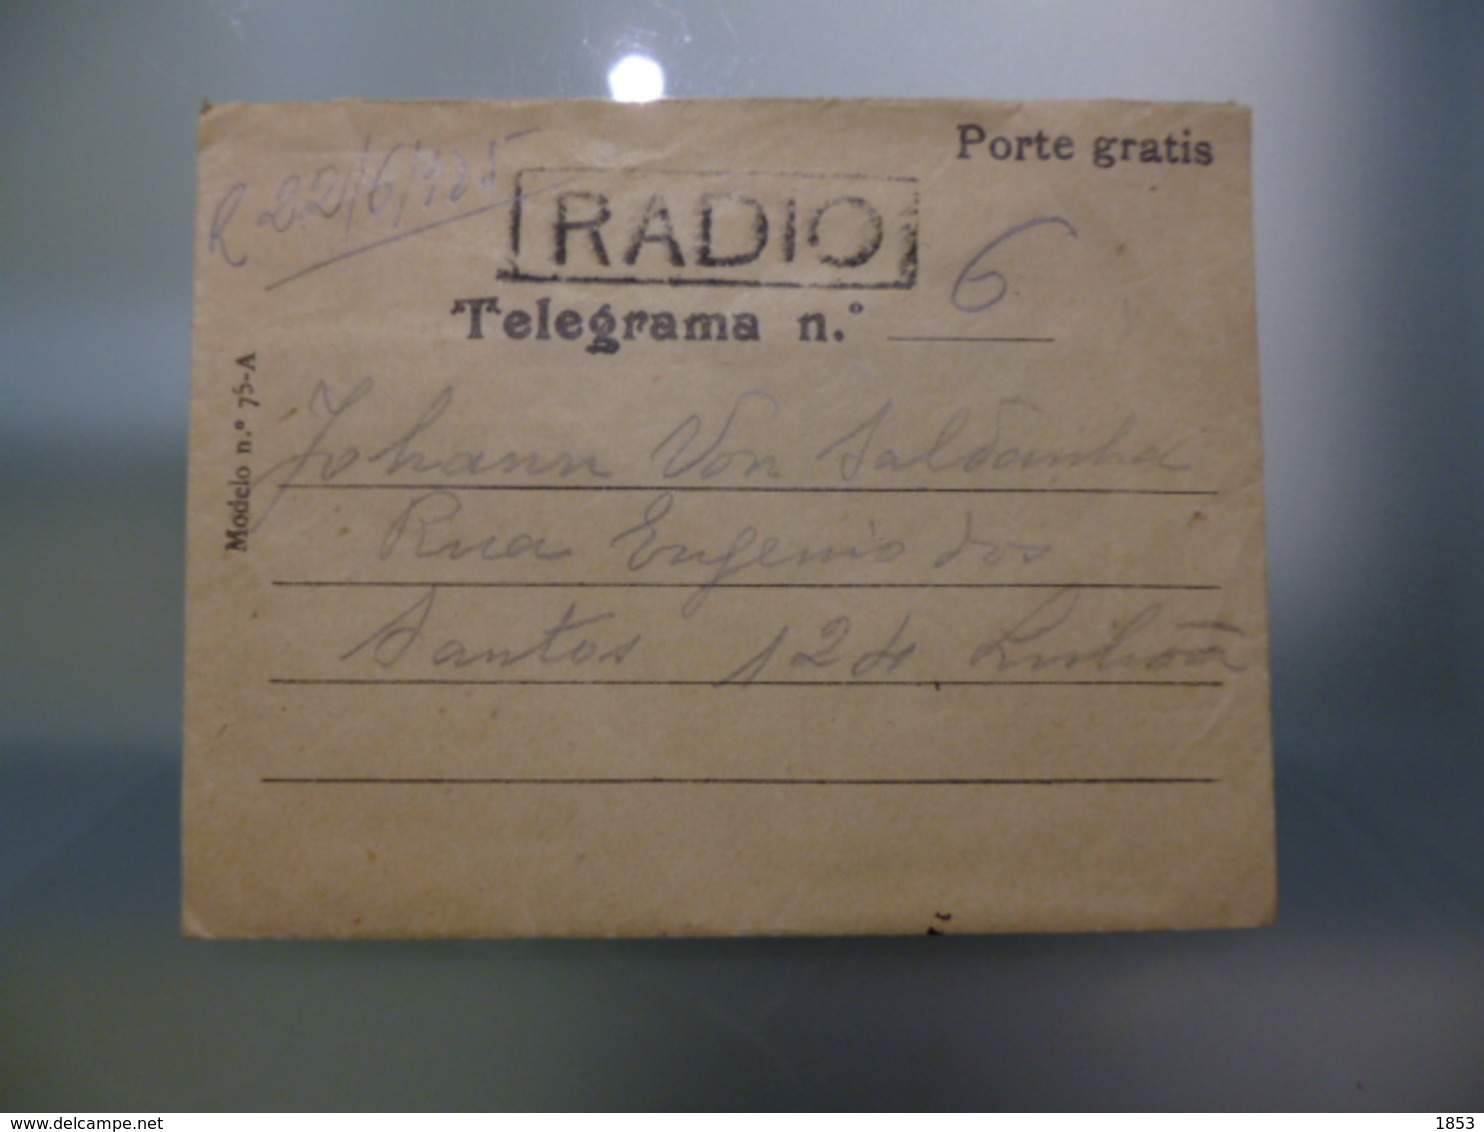 TELEGRAMA - PORTE GRATIS - VIA RÁDIO - Briefe U. Dokumente